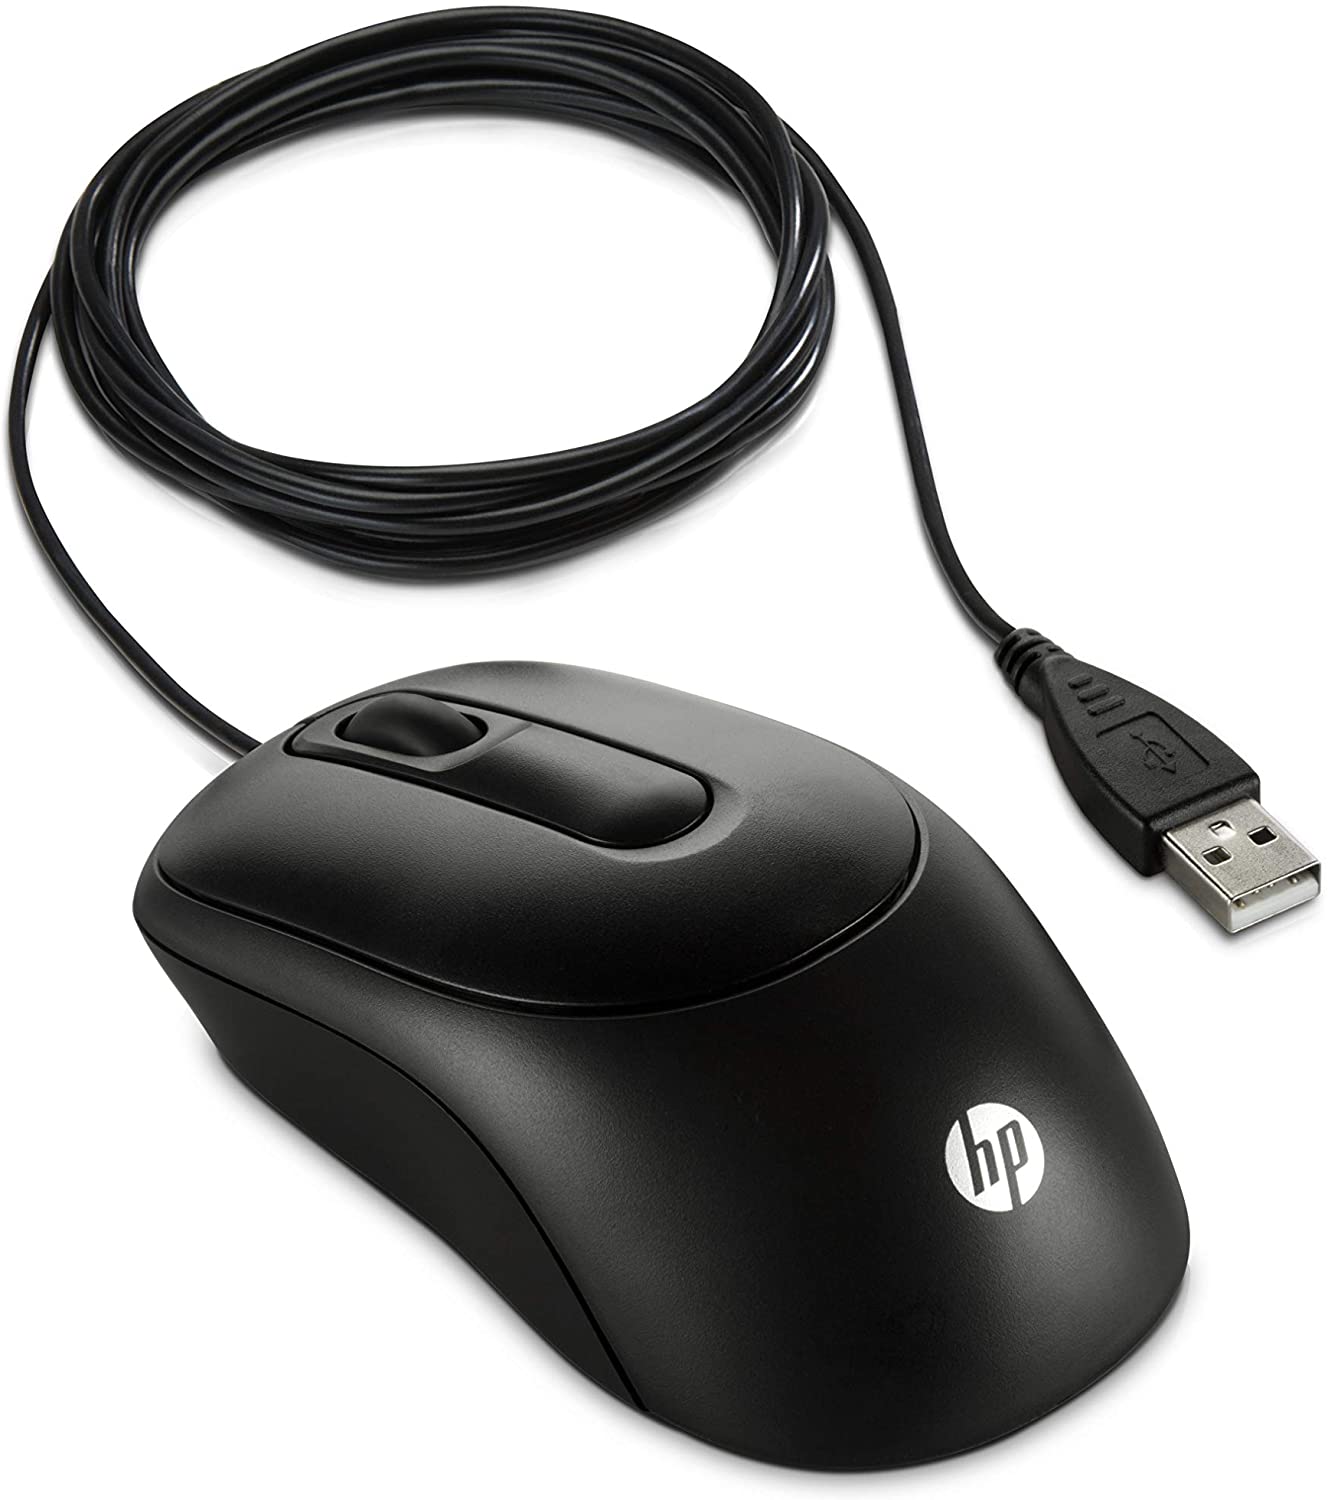 Souris filaire USB HP X900 optique, noire , informatique ile de la runion 974